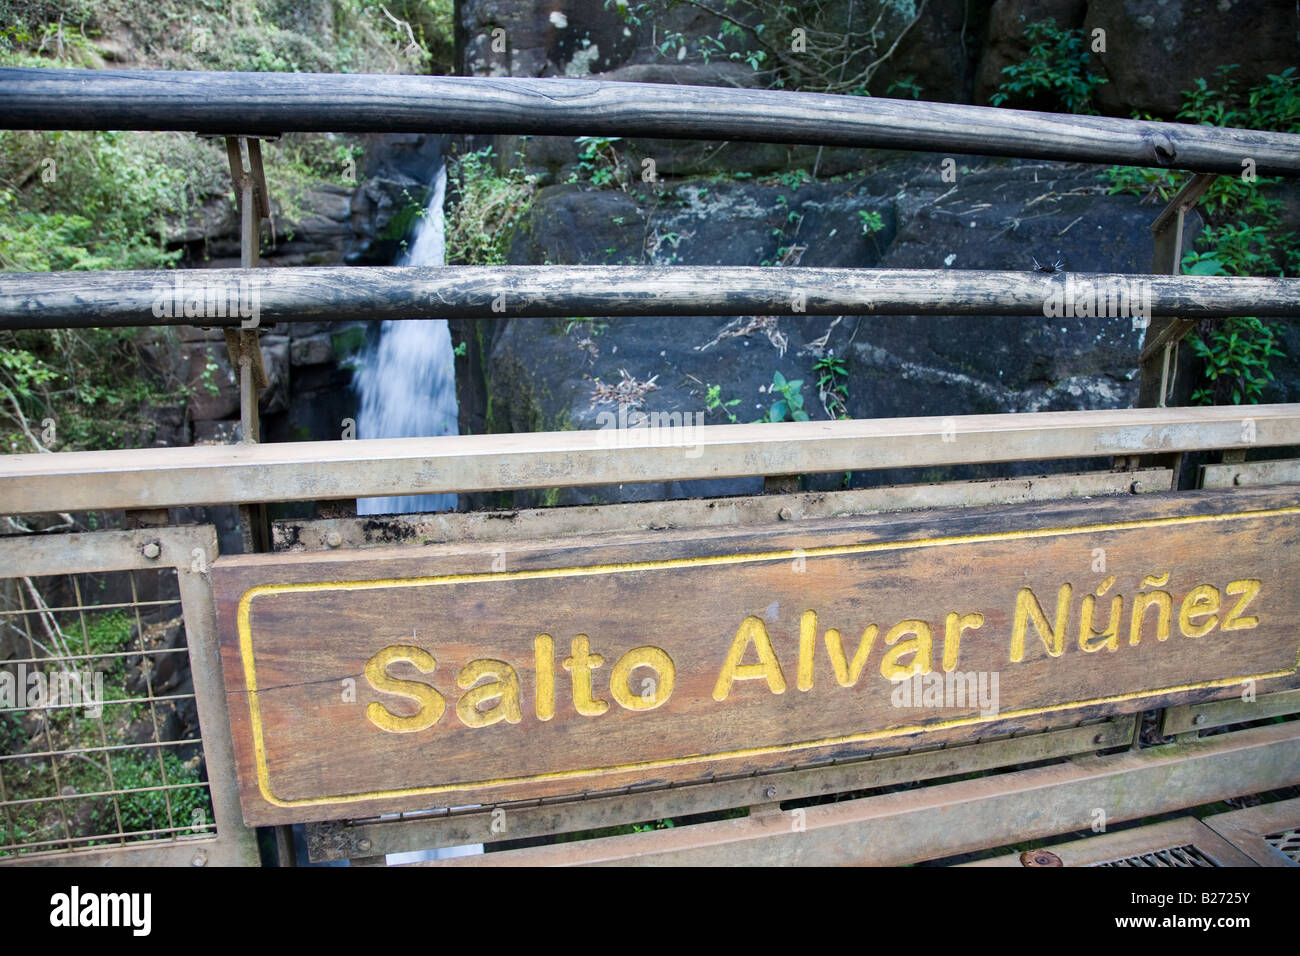 Salto Alvar Nunez Zeichen, Argentinien Iguazu National Park Stockfoto